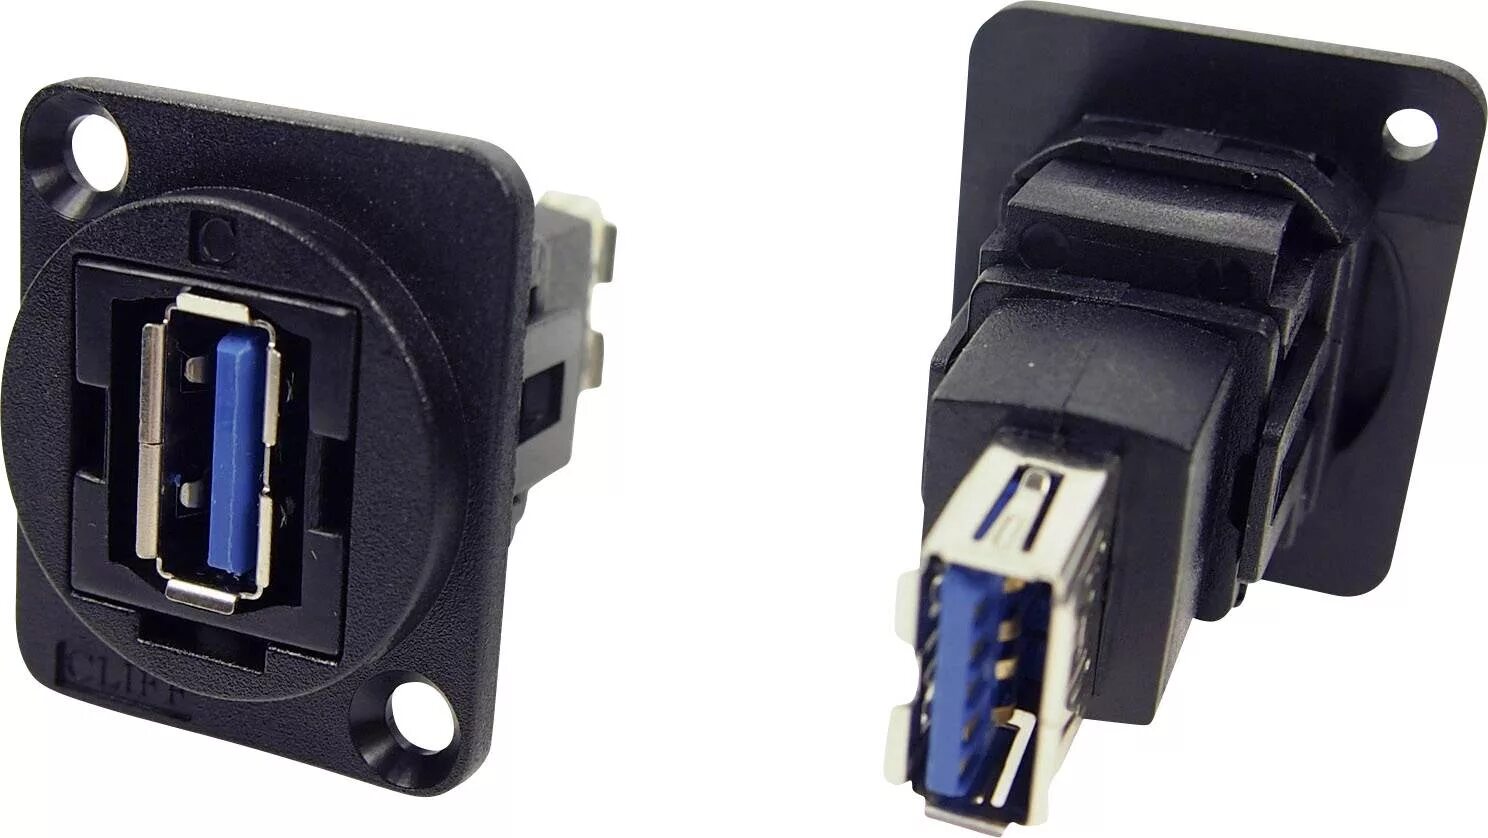 Гнездо USB 3.0 Standard a. Разъем юсб 3.0. Проходной разъем USB 3.0 Type a. AC-usb3-AA@Amphenol разъем USB 3.0, Тип а-a панельный. Разъем usb 3.0 купить